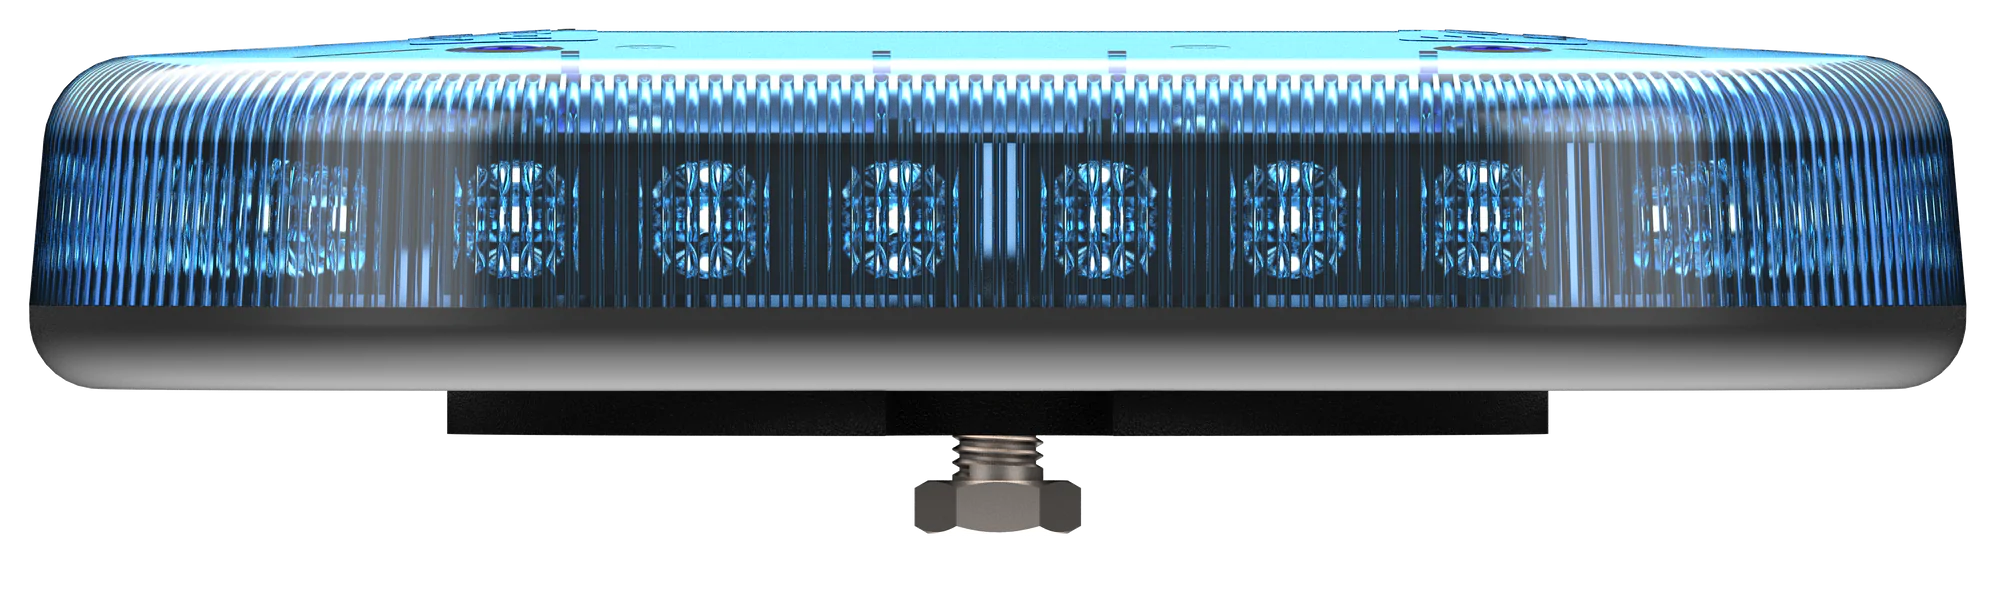 Redtronic Tornado LED Low Profile Microbar